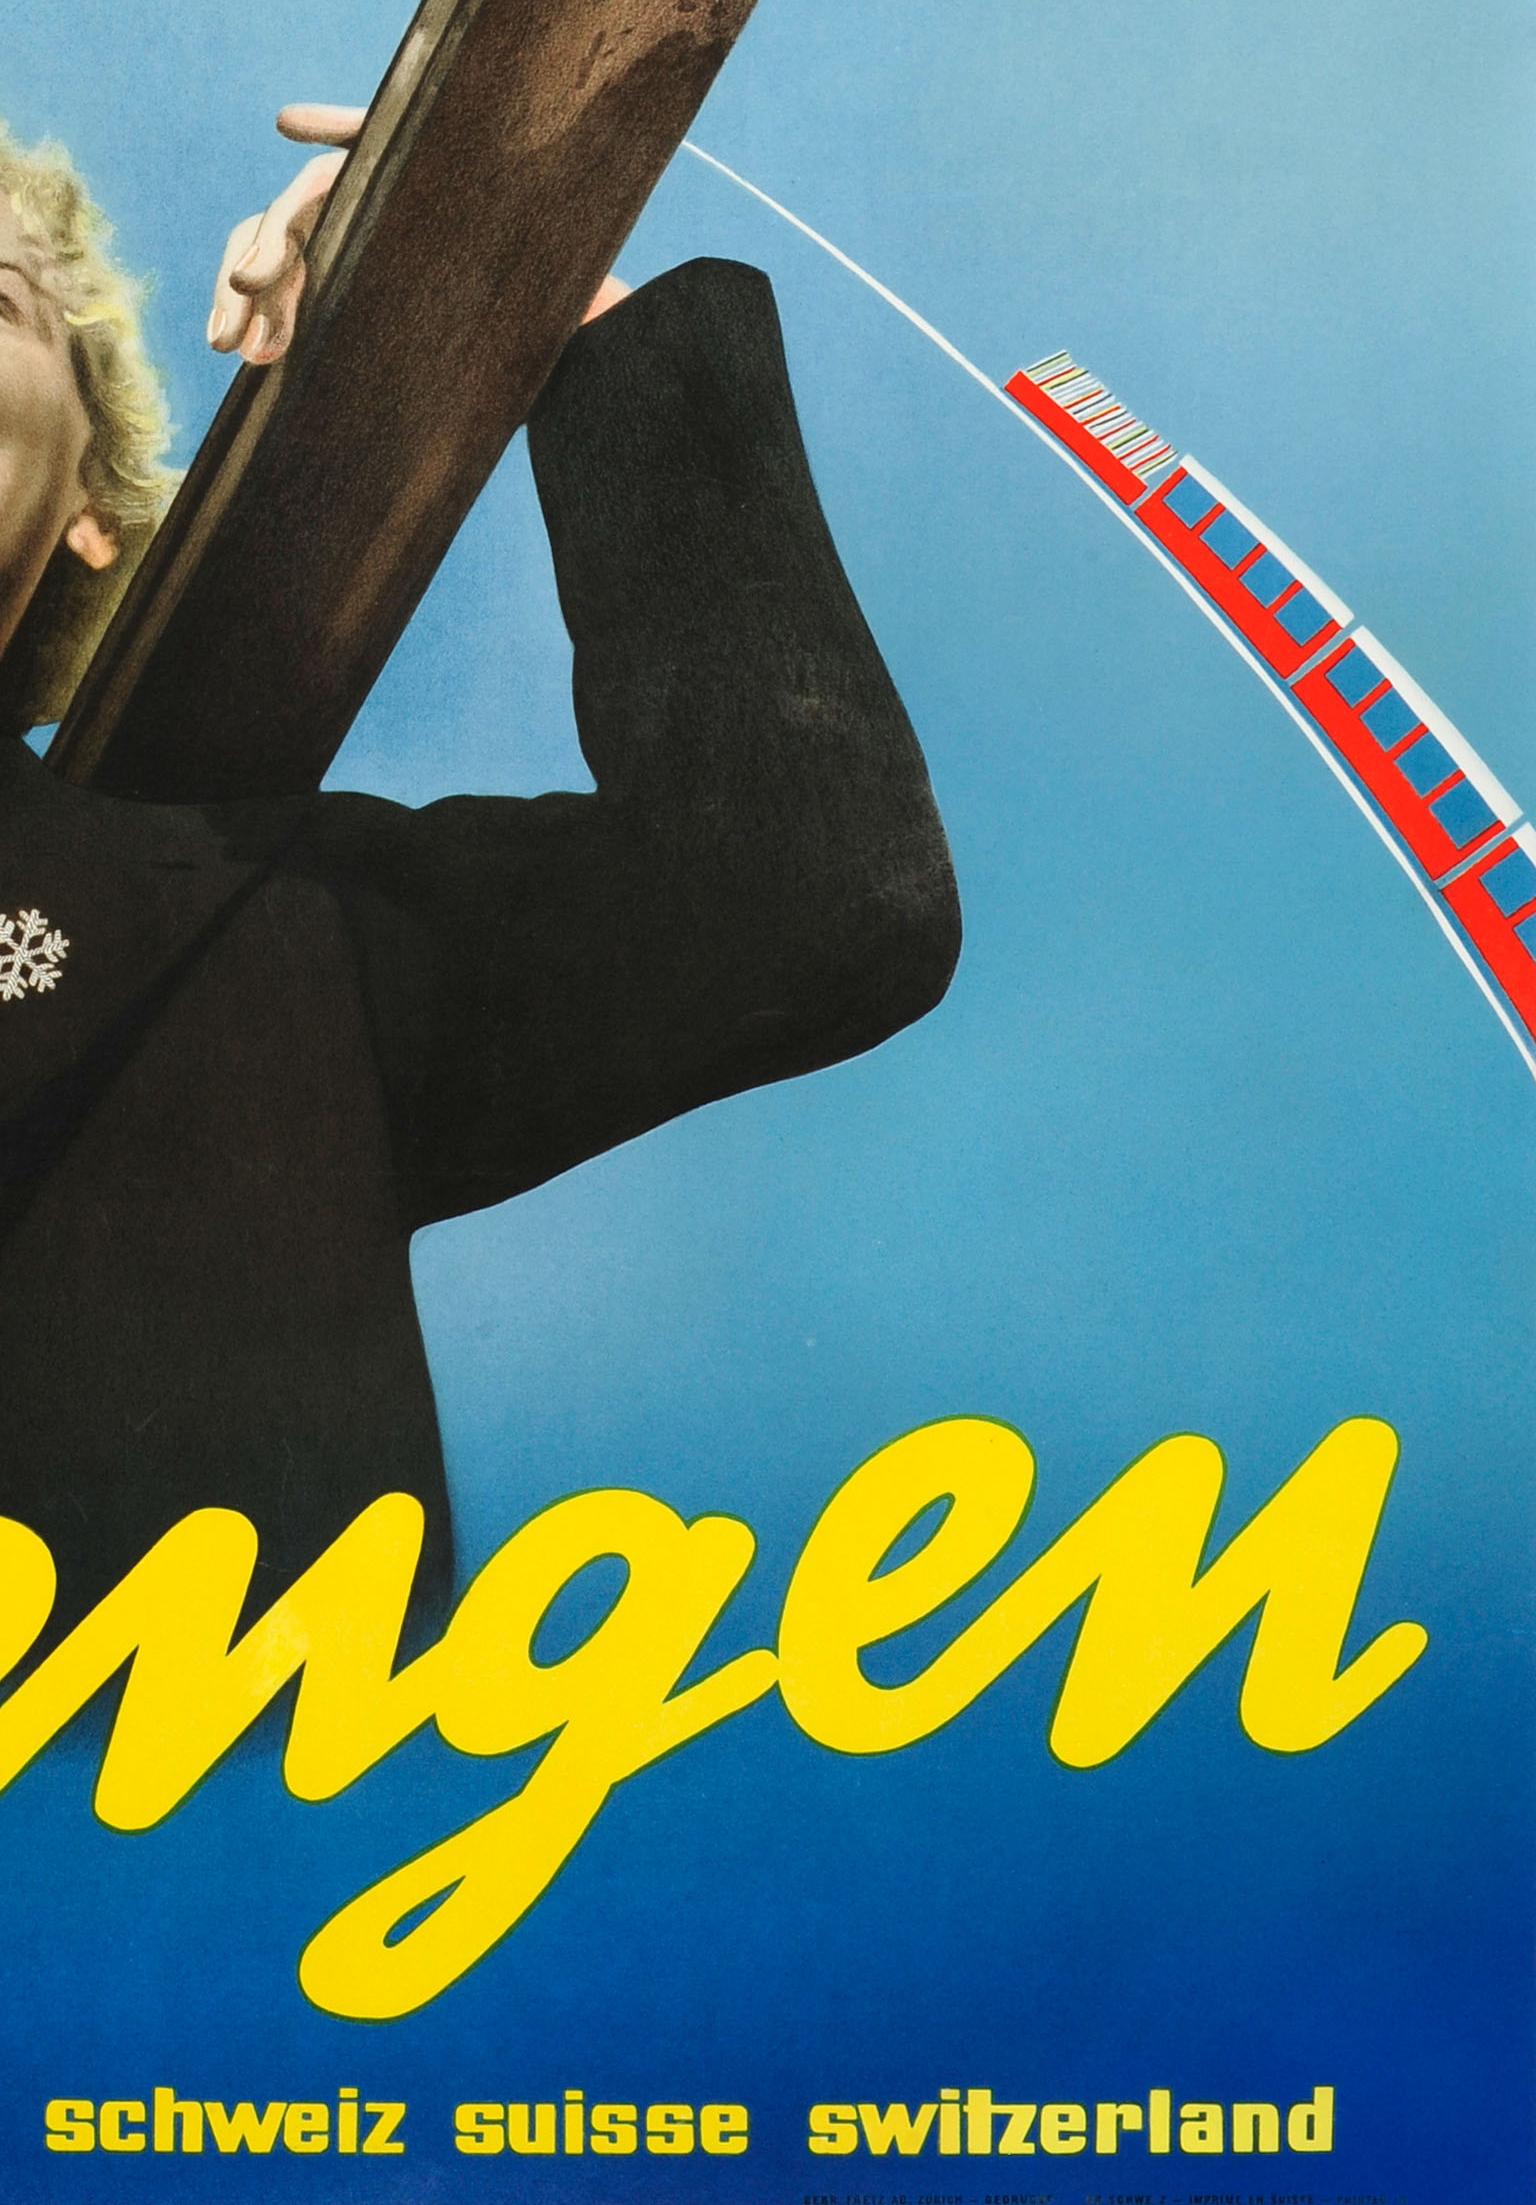 Affiche vintage originale de voyage pour le ski faisant la promotion de la station alpine populaire de Wengen en Suisse. La photo représente une dame blonde riant et portant un haut rouge avec une broche en forme de flocon de neige sur sa veste